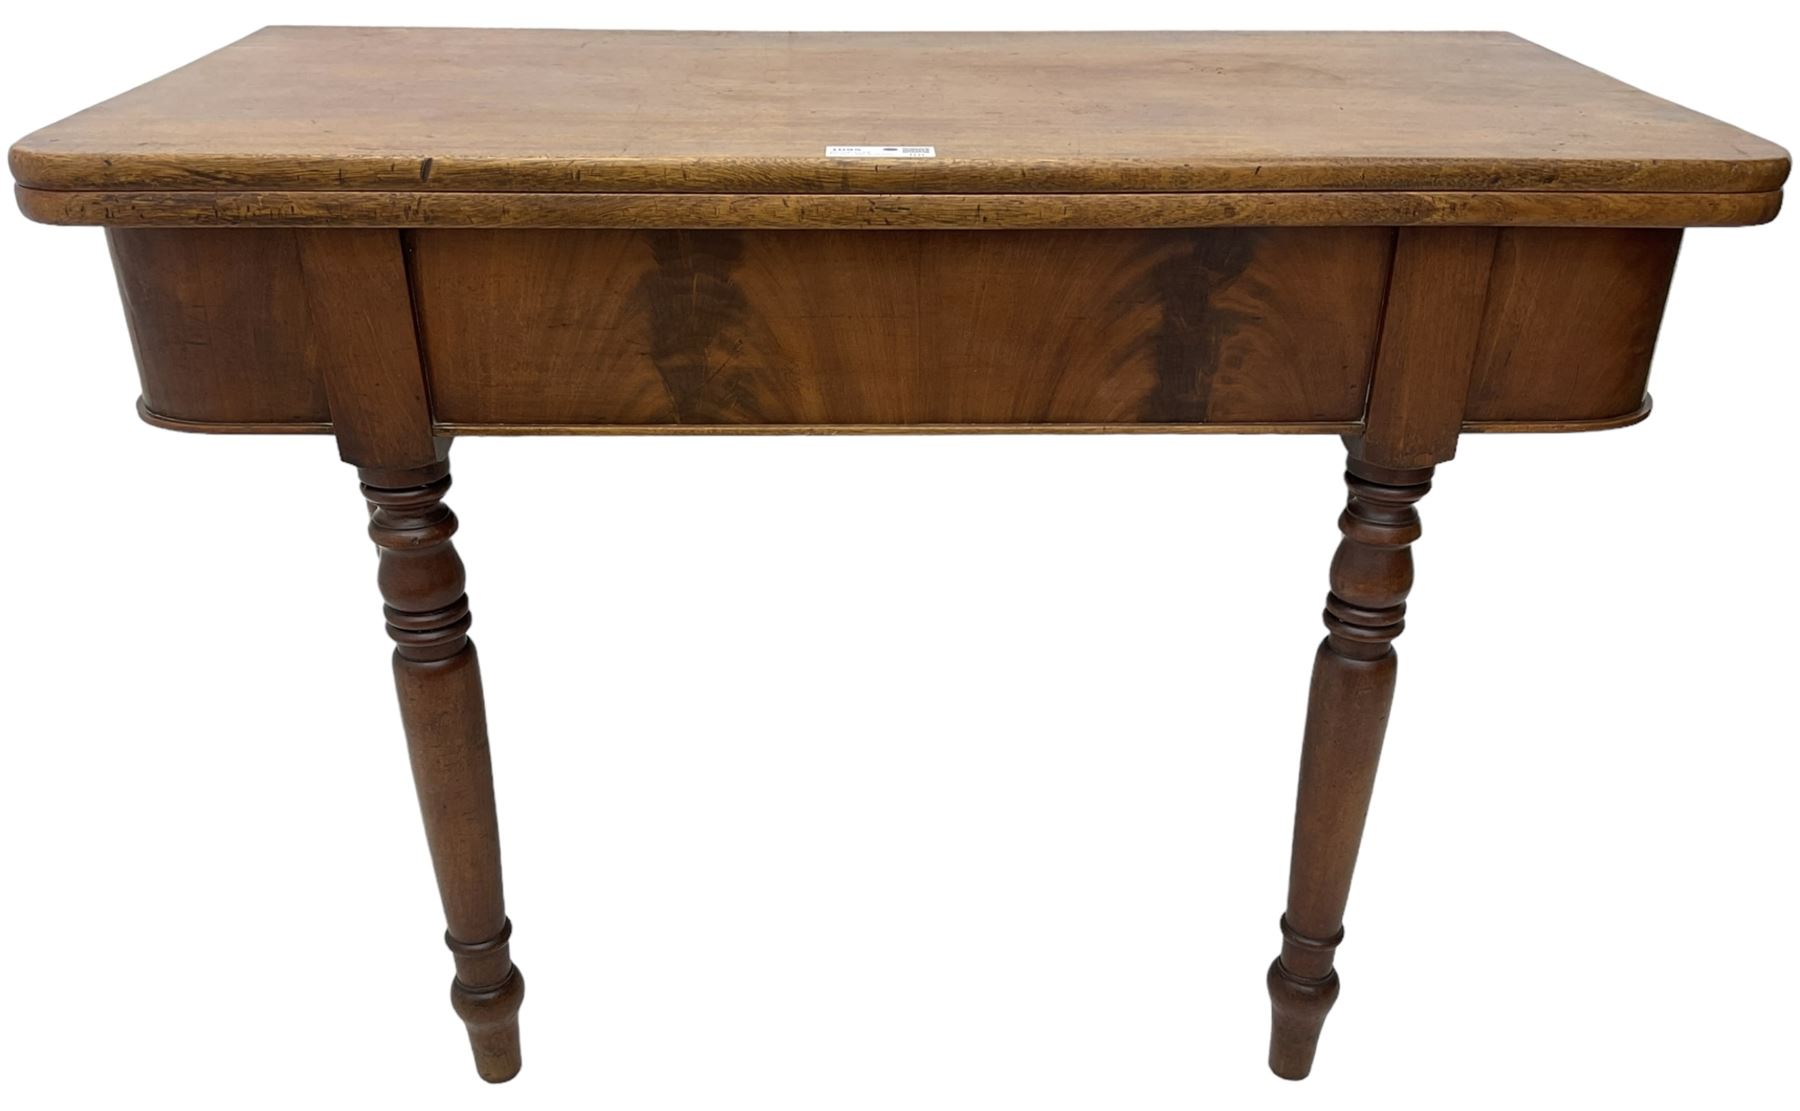 19th century mahogany tea table - Image 3 of 6